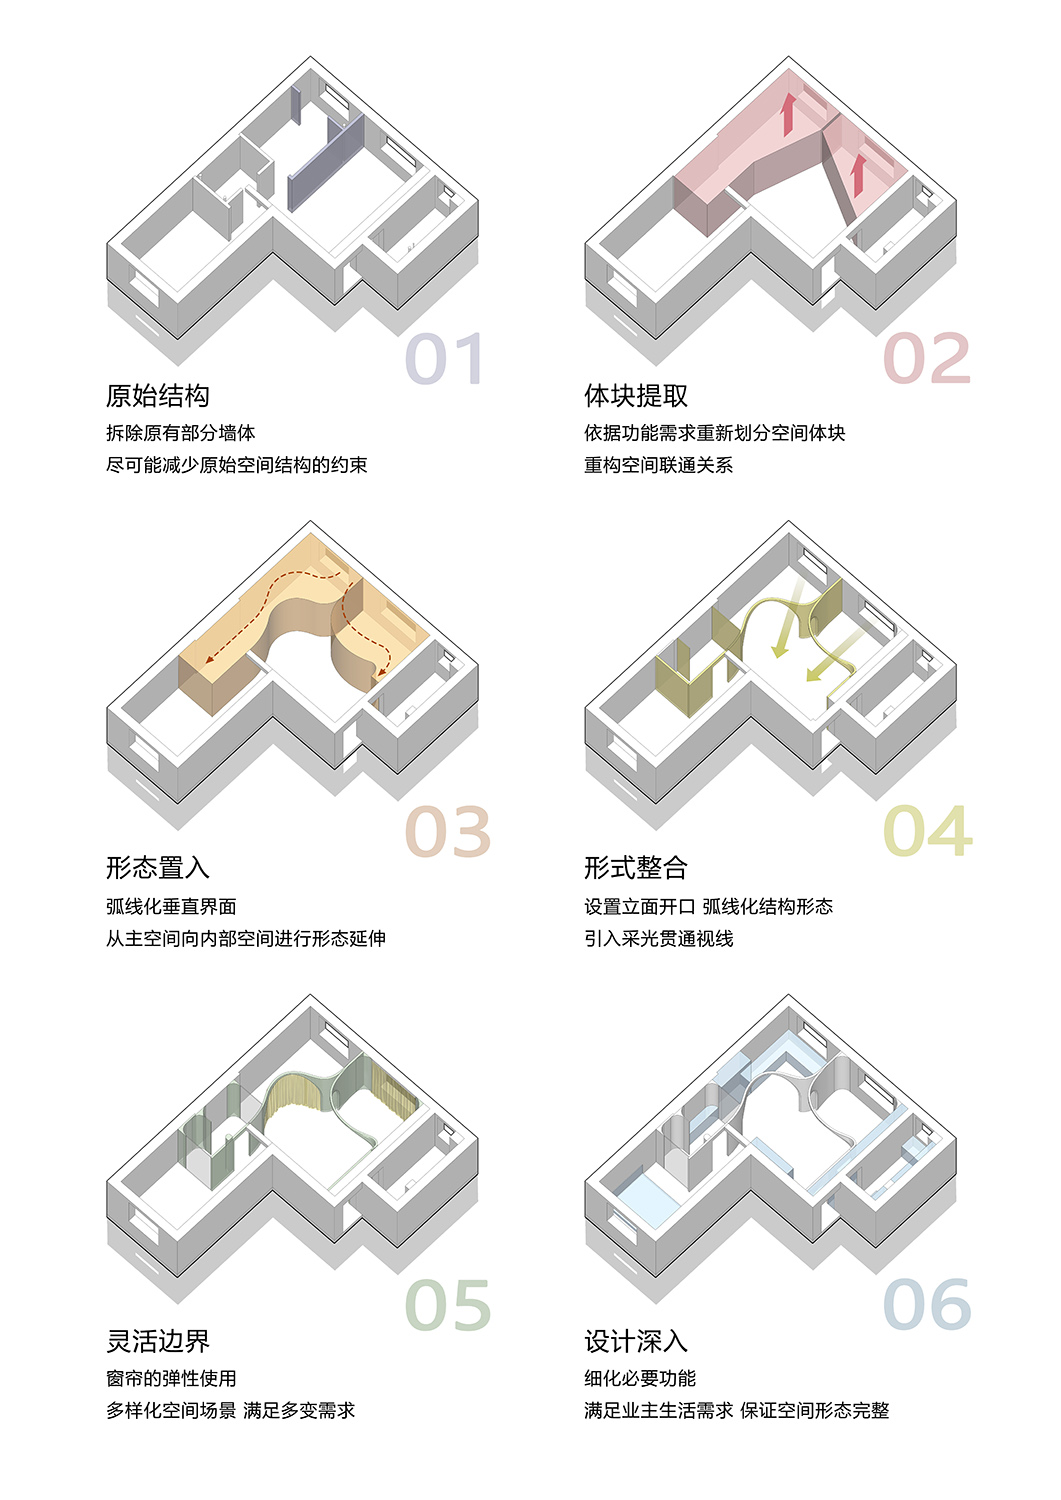 60㎡住宅設計,60㎡,小戶型設計,家裝設計,北京小戶型設計,北京住宅設計,小戶型設計案例,住宅設計案例,戲構建築,戲構建築設計,戲構建築設計公司